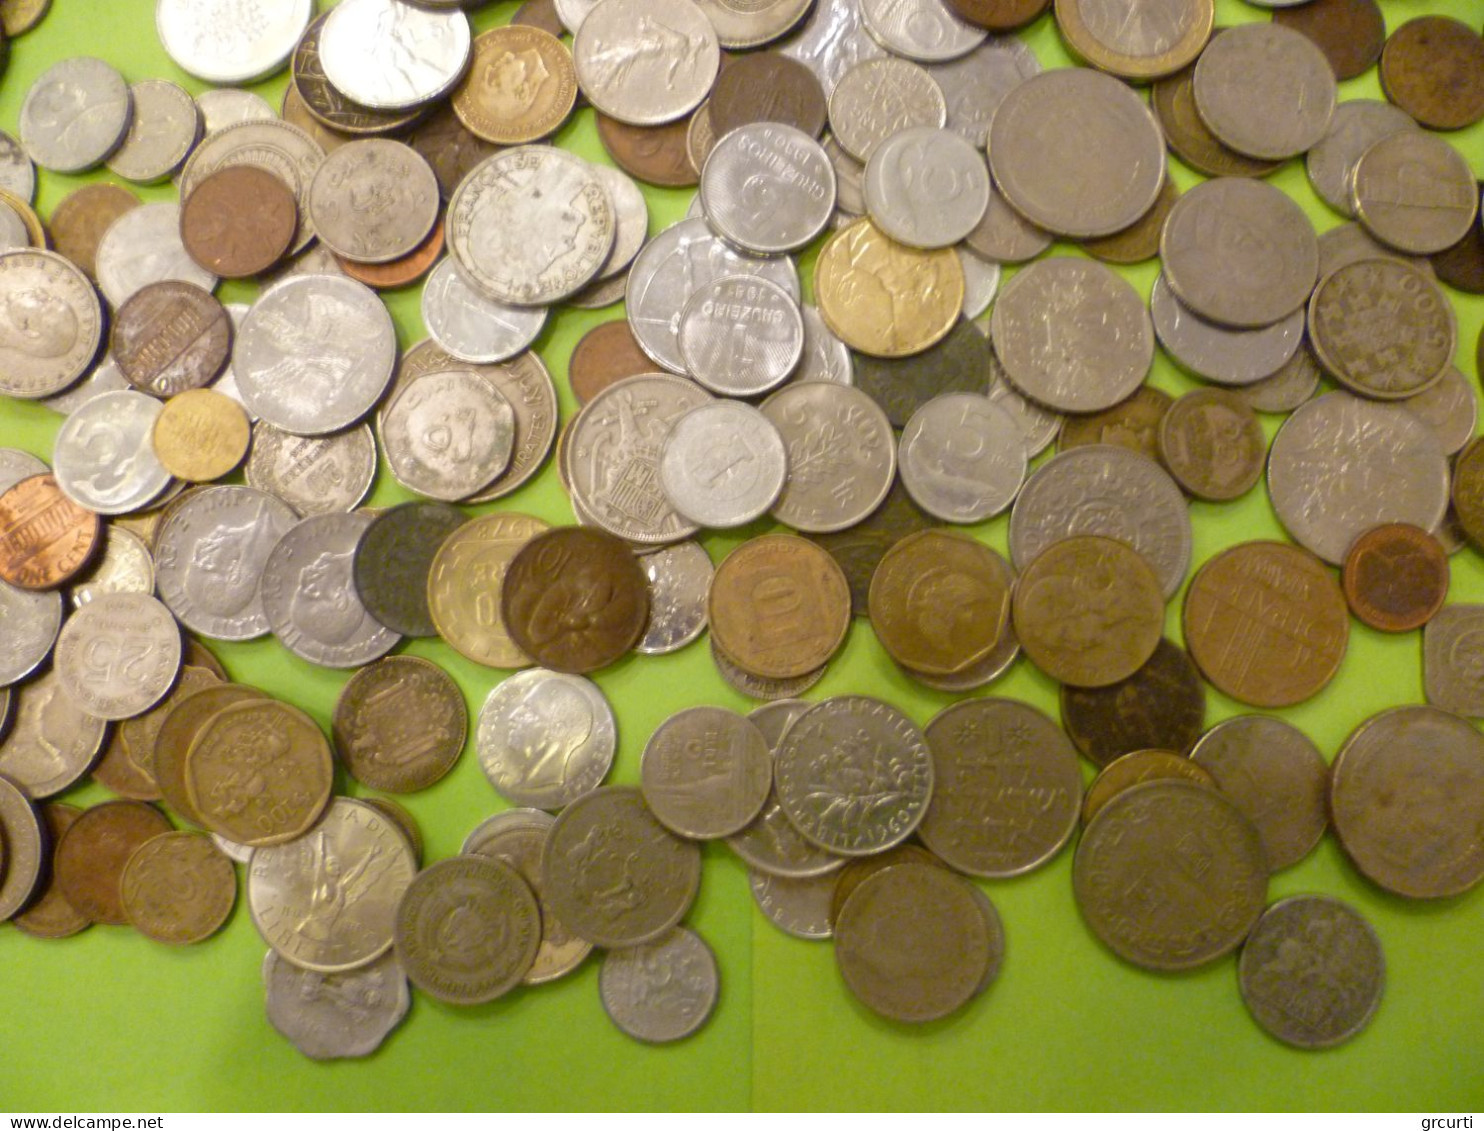 Mondo - Lotto di 1,5 kg di monete assortite